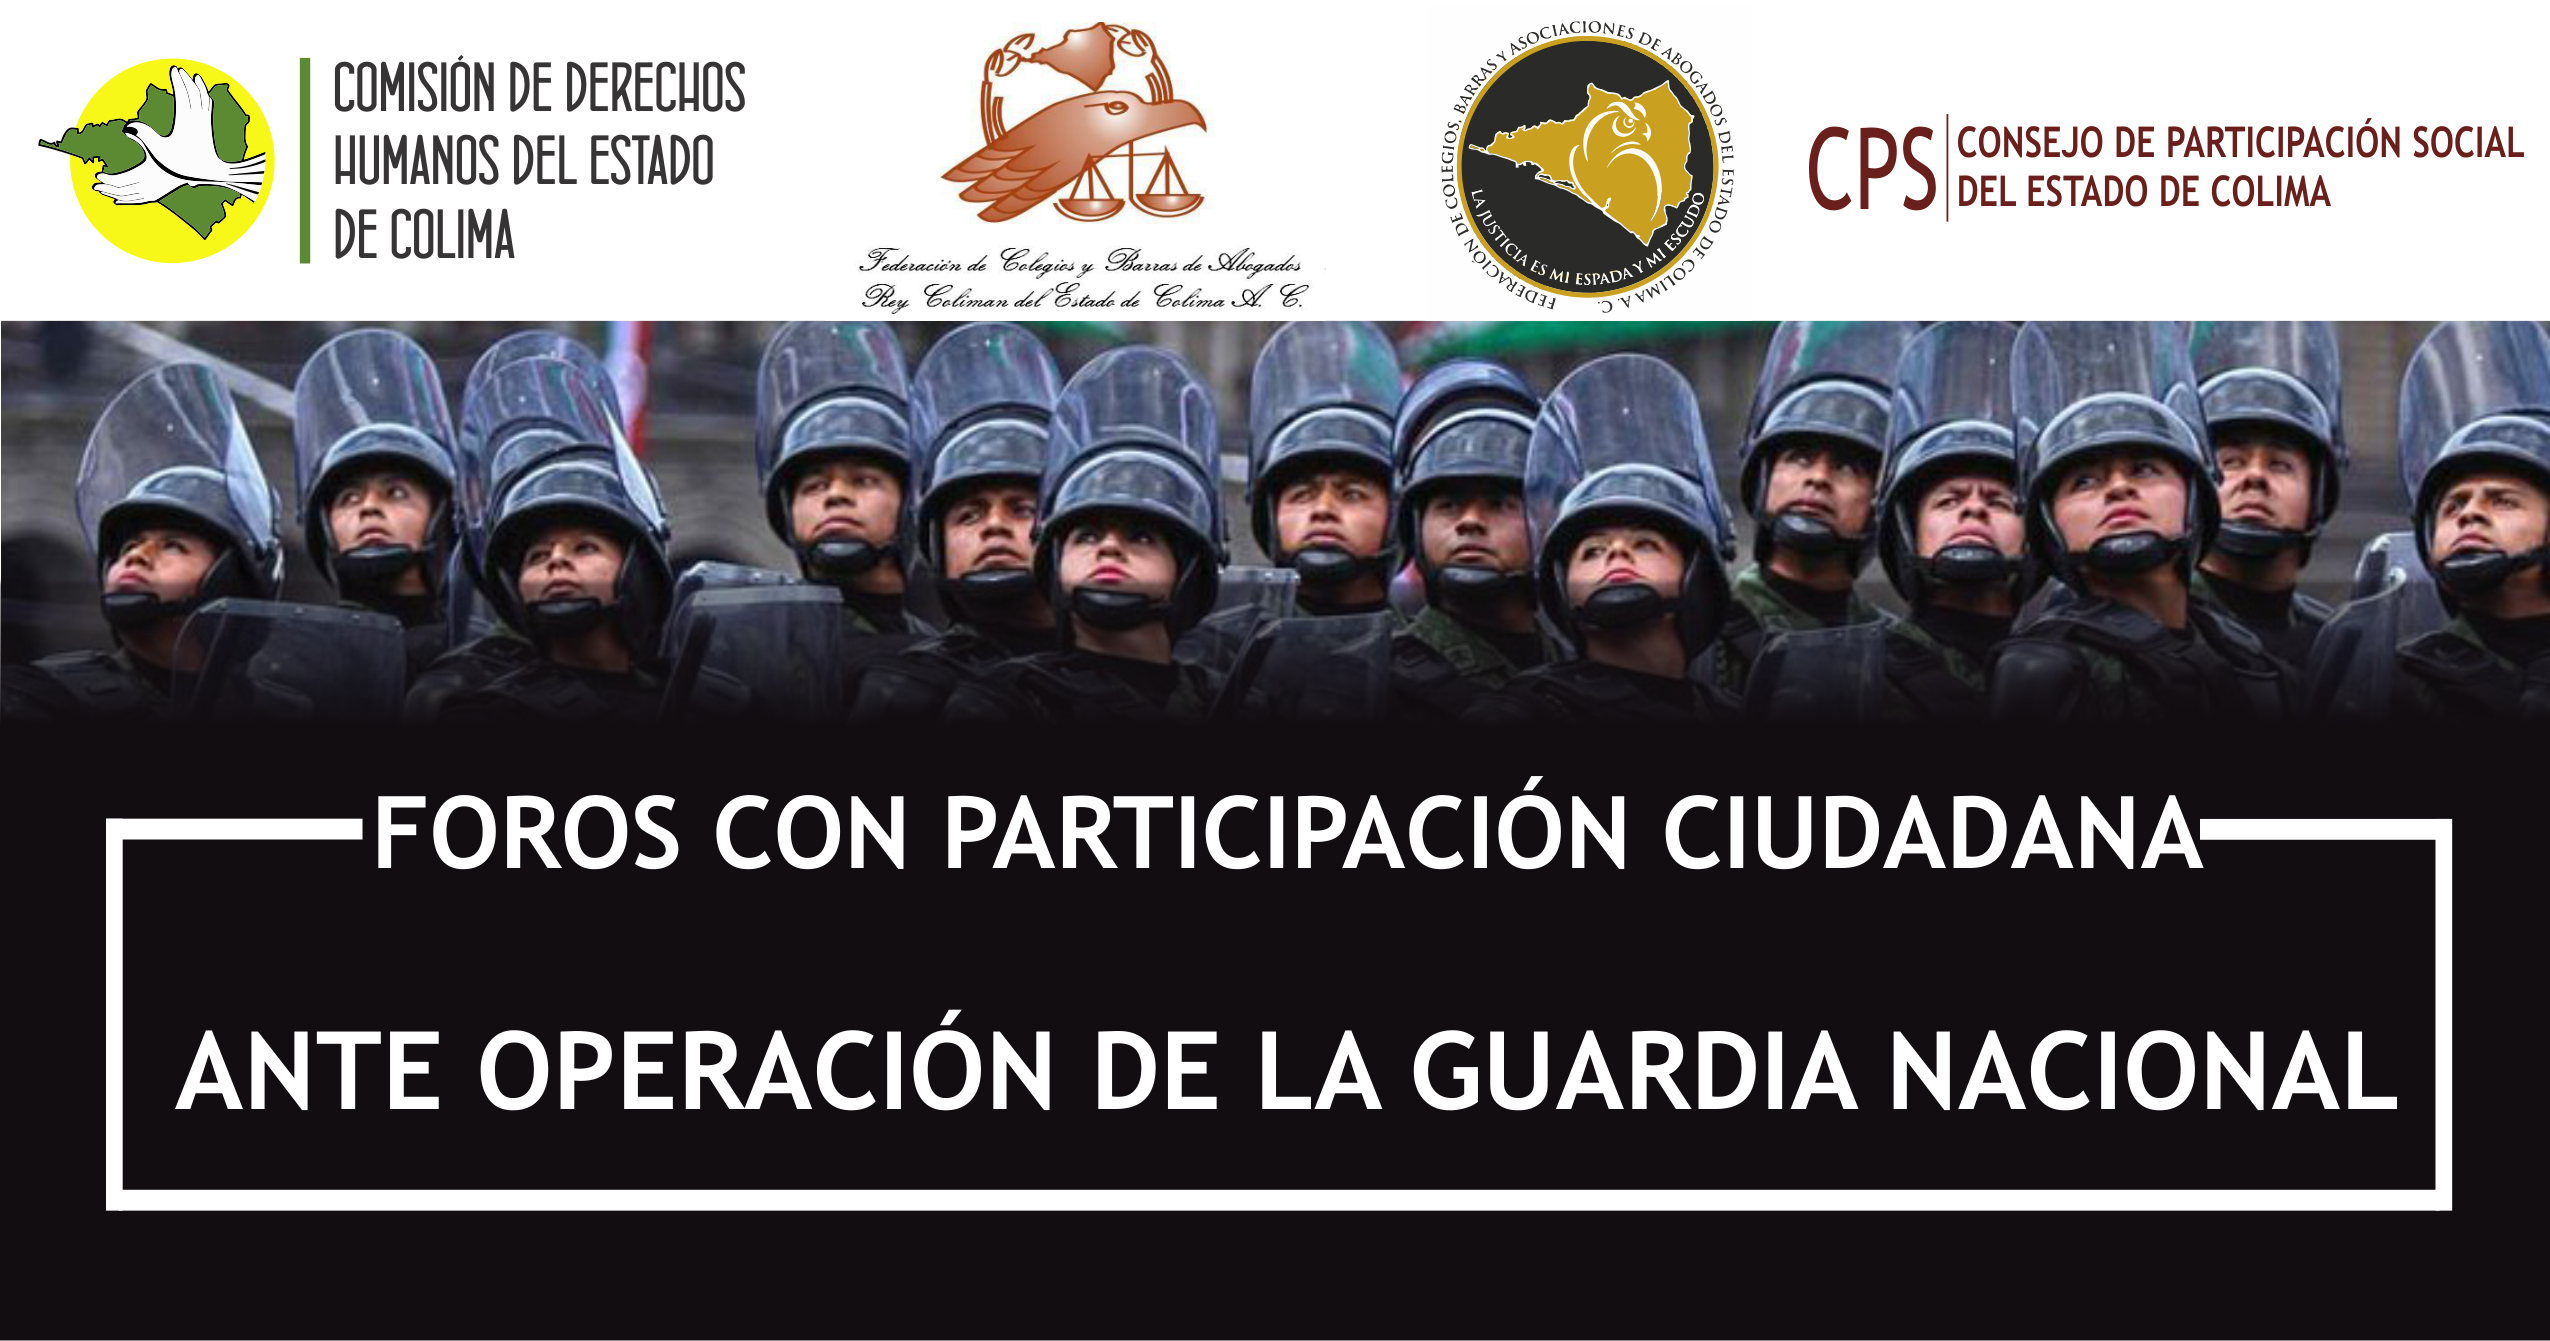 “Foros con Participación Ciudadana ante Operación de la Guardia Nacional”